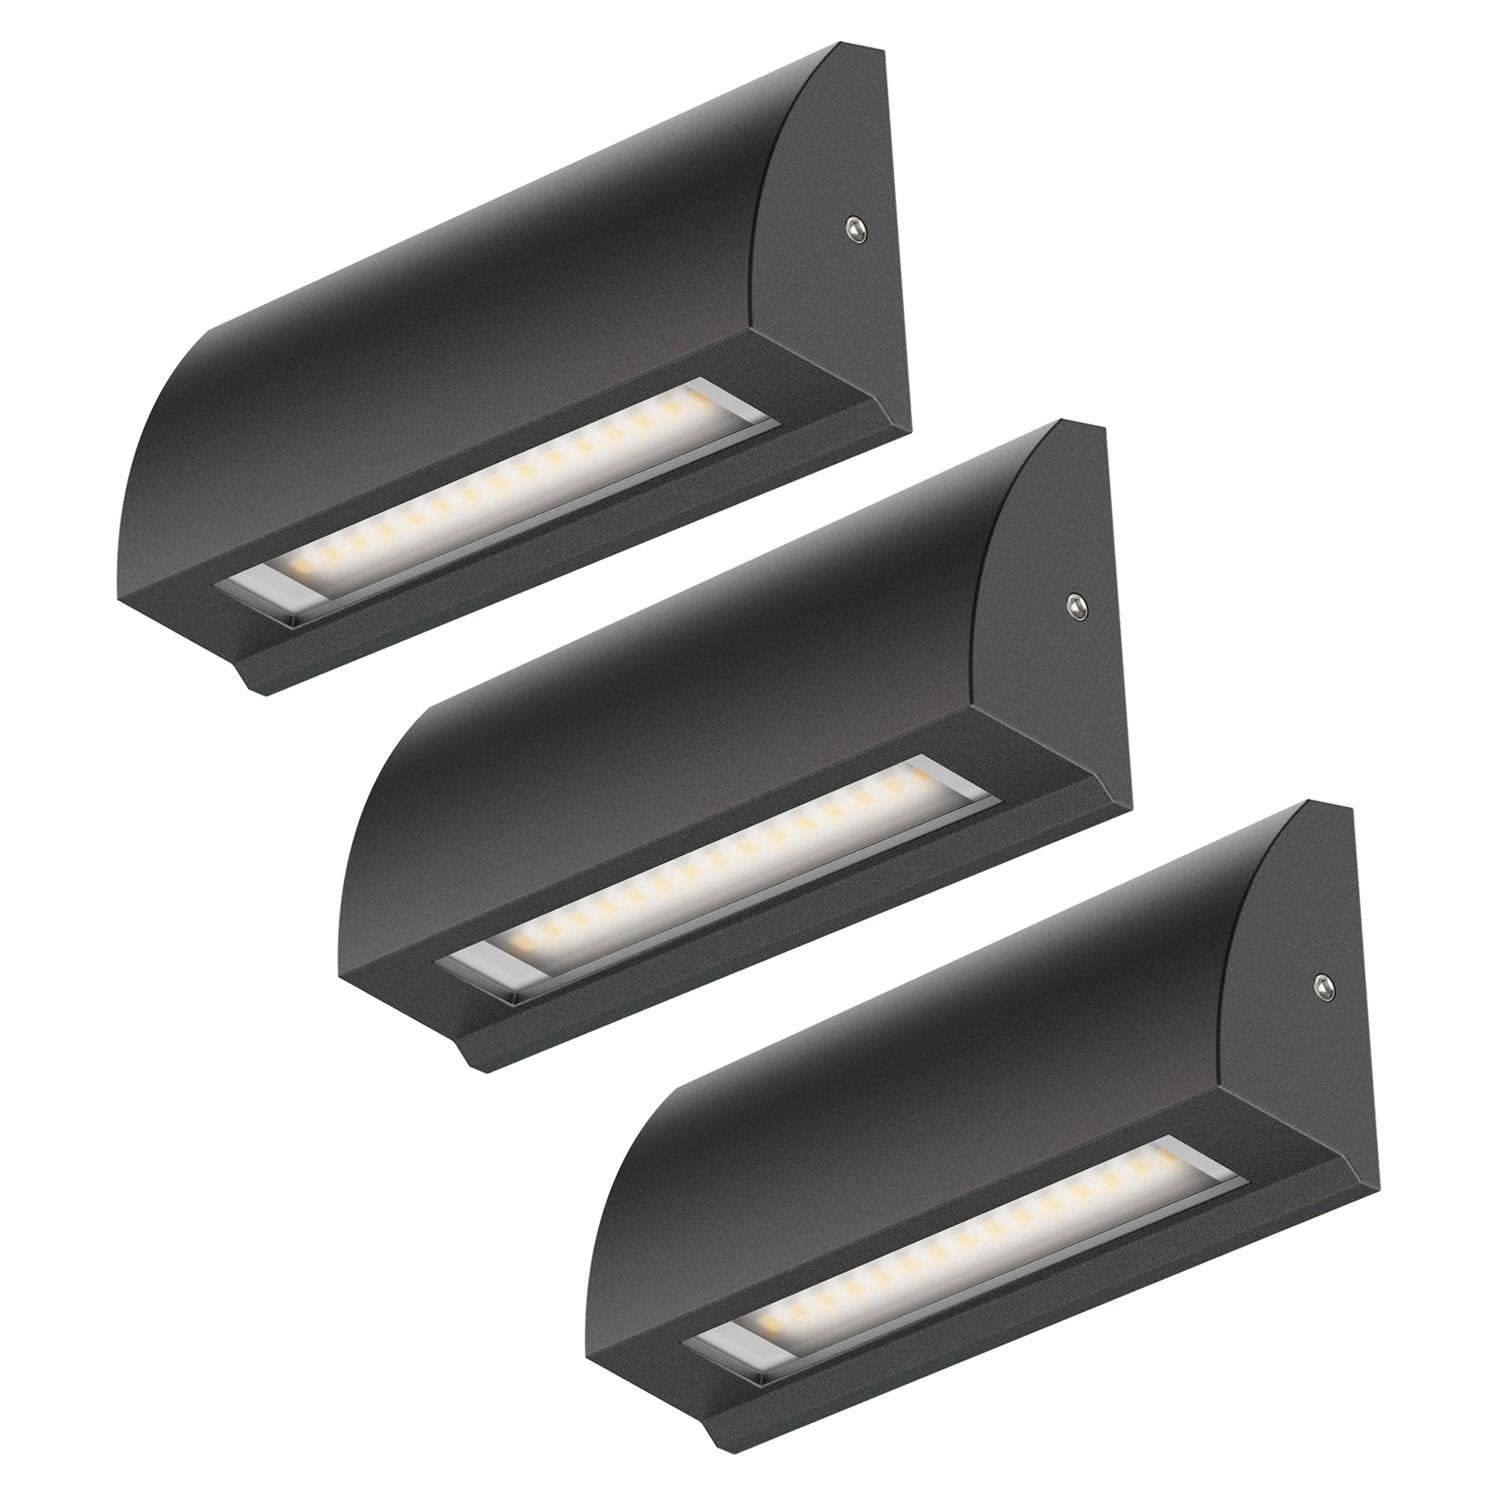 ledscom.de 3 Stück LED Wandleuchte/Treppenlicht SEGIN für außen, IP54, flach, Downlight, schwarz matt, eckig, 3,8 W, 265lm, warmweiß